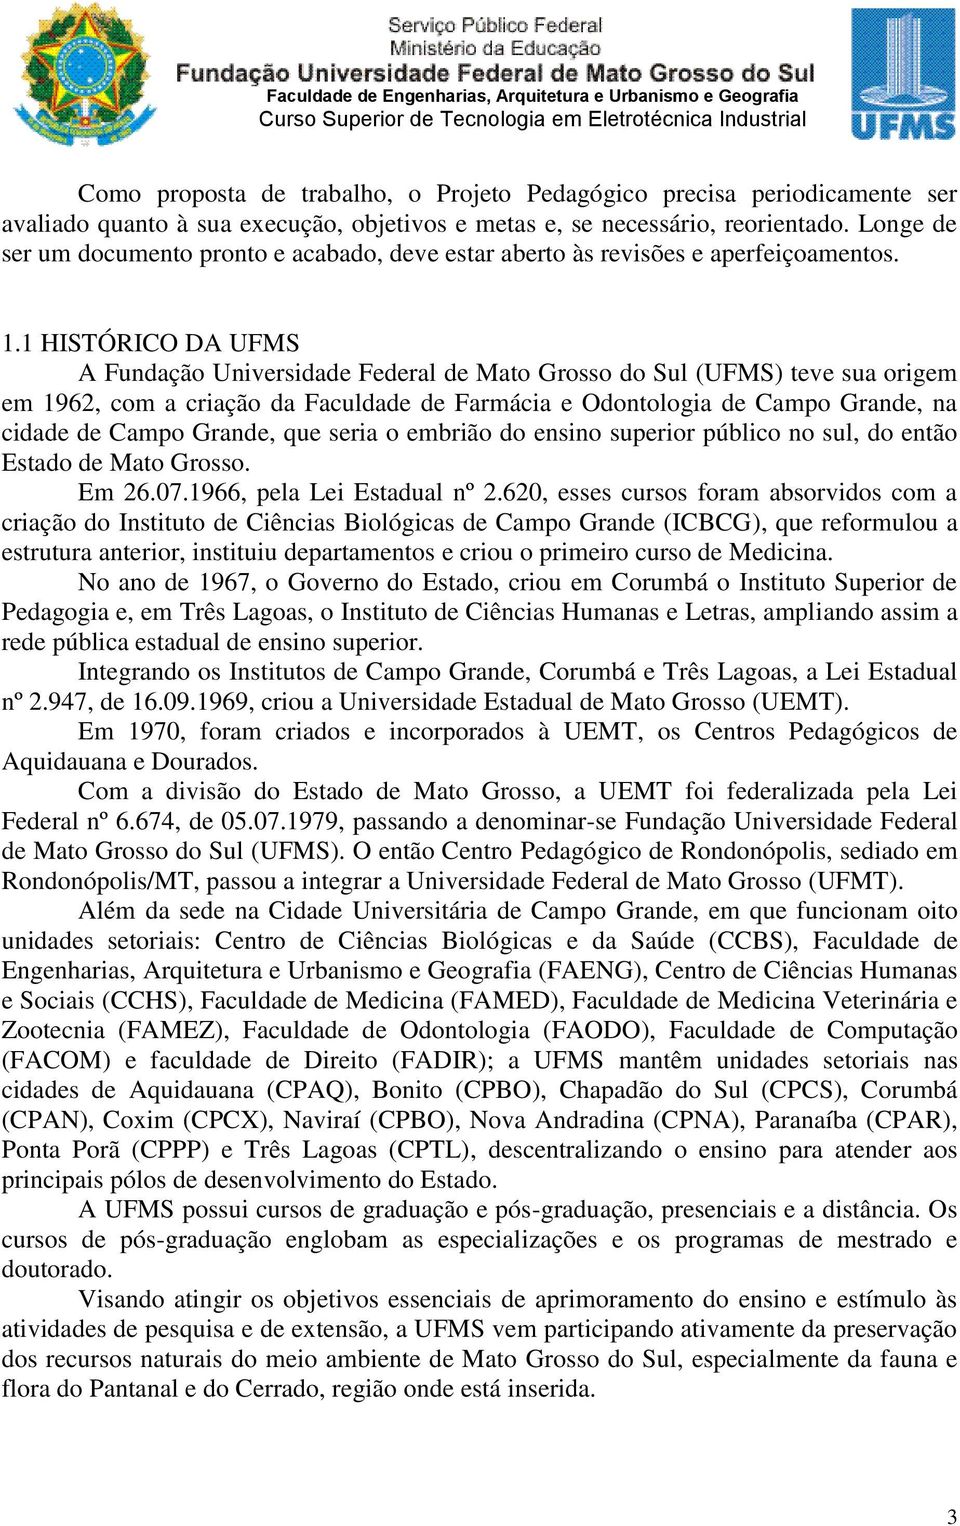 1 HISTÓRICO DA UFMS A Fundação Universidade Federal de Mato Grosso do Sul (UFMS) teve sua origem em 1962, com a criação da Faculdade de Farmácia e Odontologia de Campo Grande, na cidade de Campo